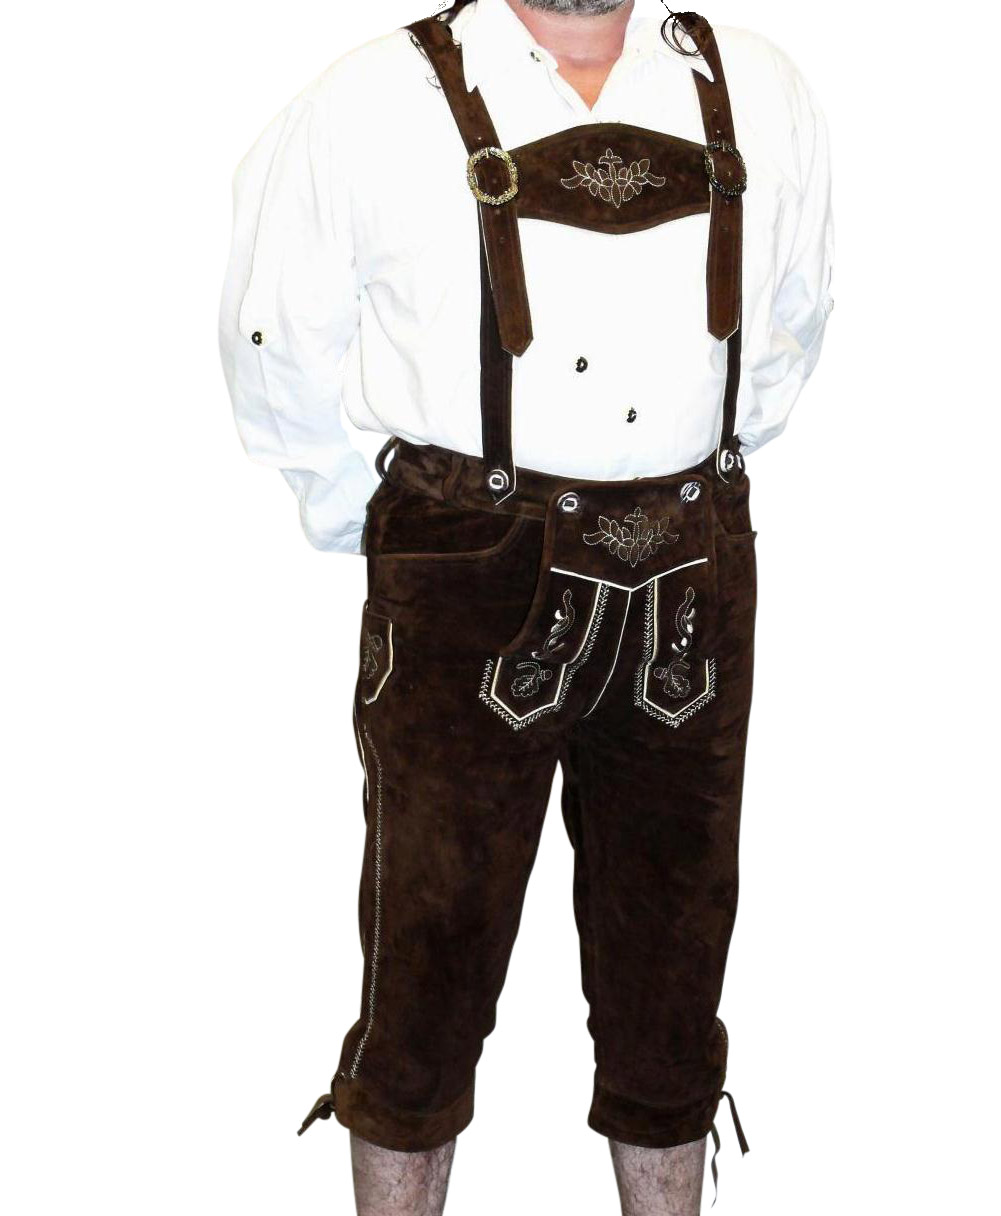 TRENDS Men's Bavarian Trachten Lederhosen Leather Shorts